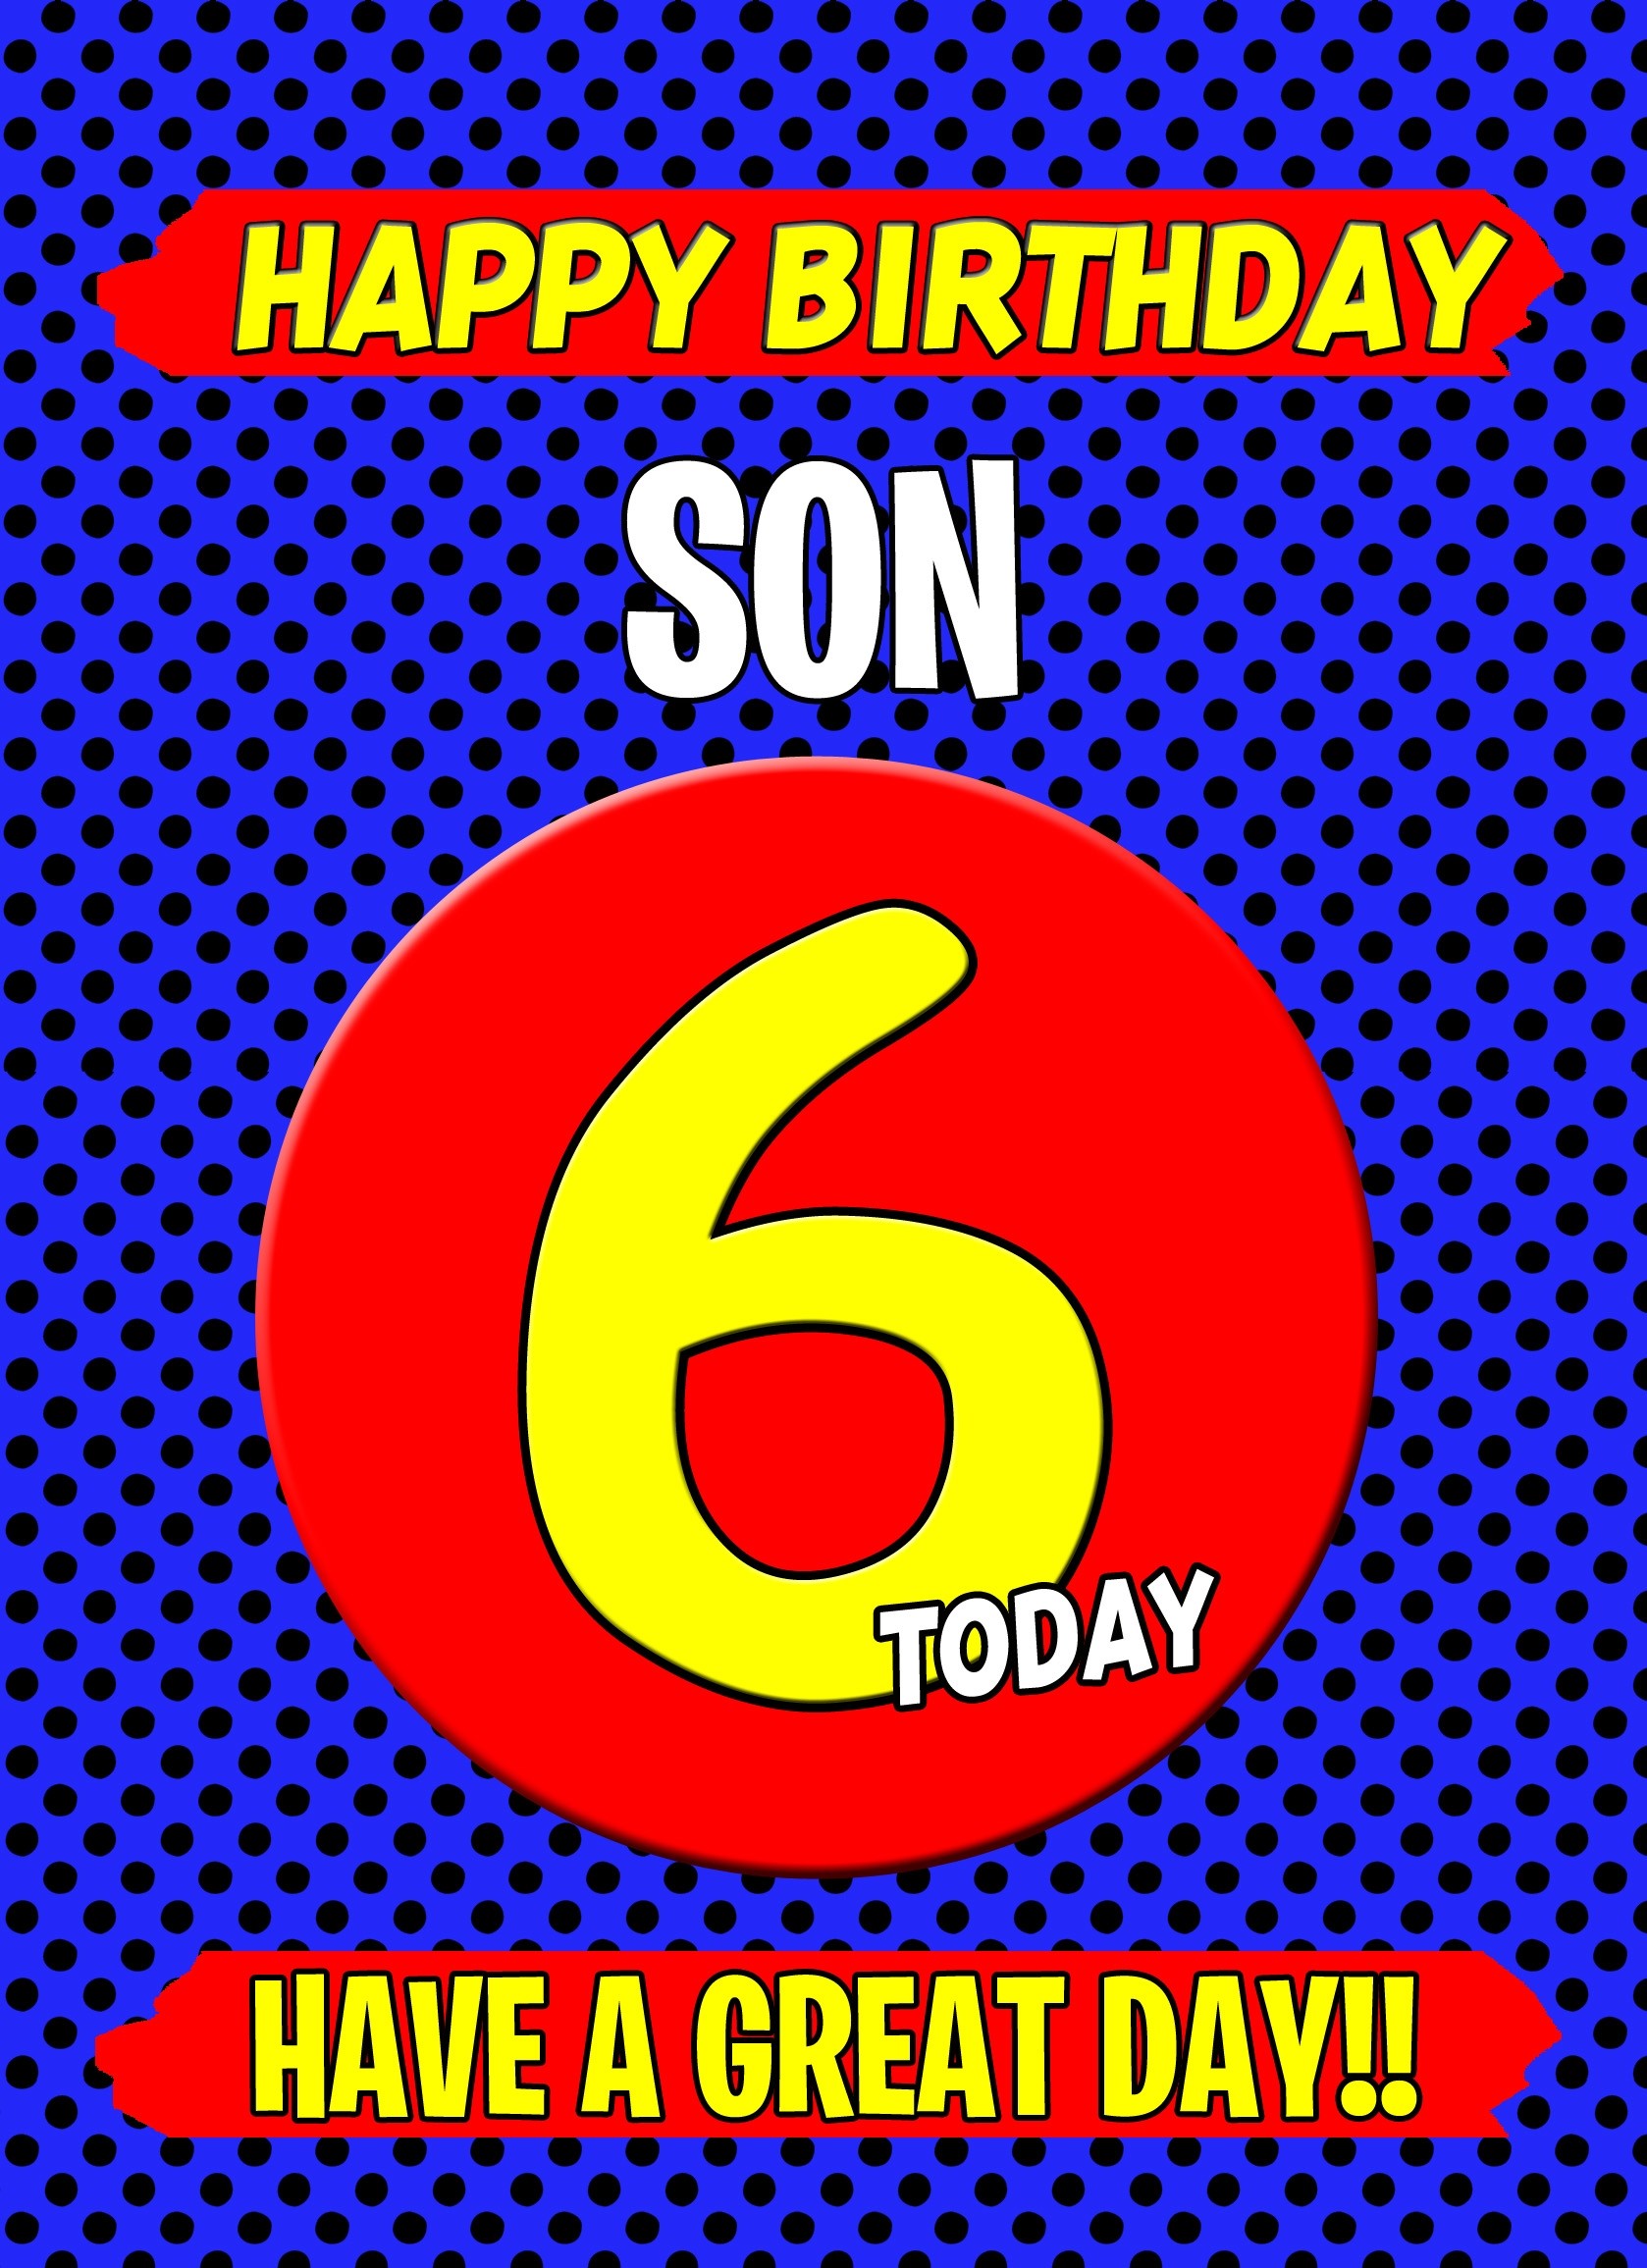 Son 6th Birthday Card (Blue)